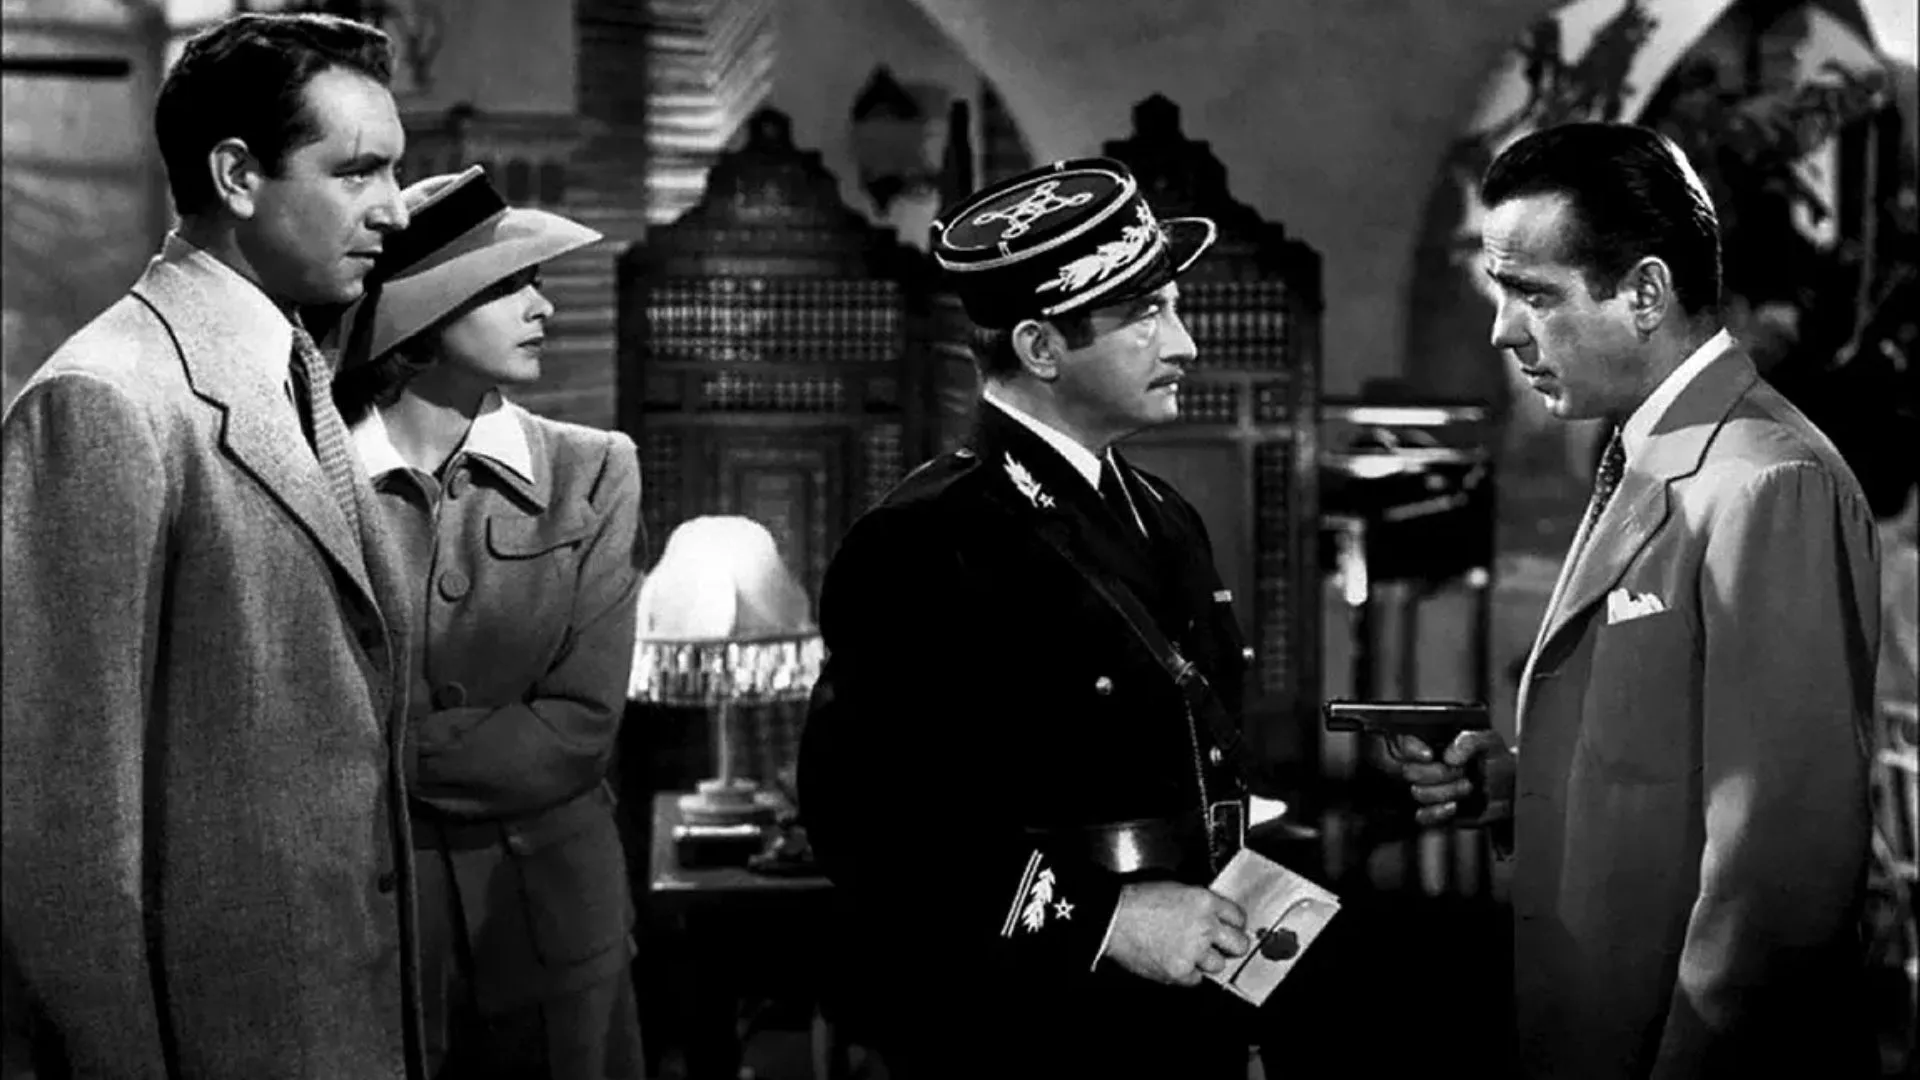 Dirigida por Michael Curtiz, ambientada durante la Segunda Guerra Mundial, la película se desarrolla en la ciudad de Casablanca, Marruecos